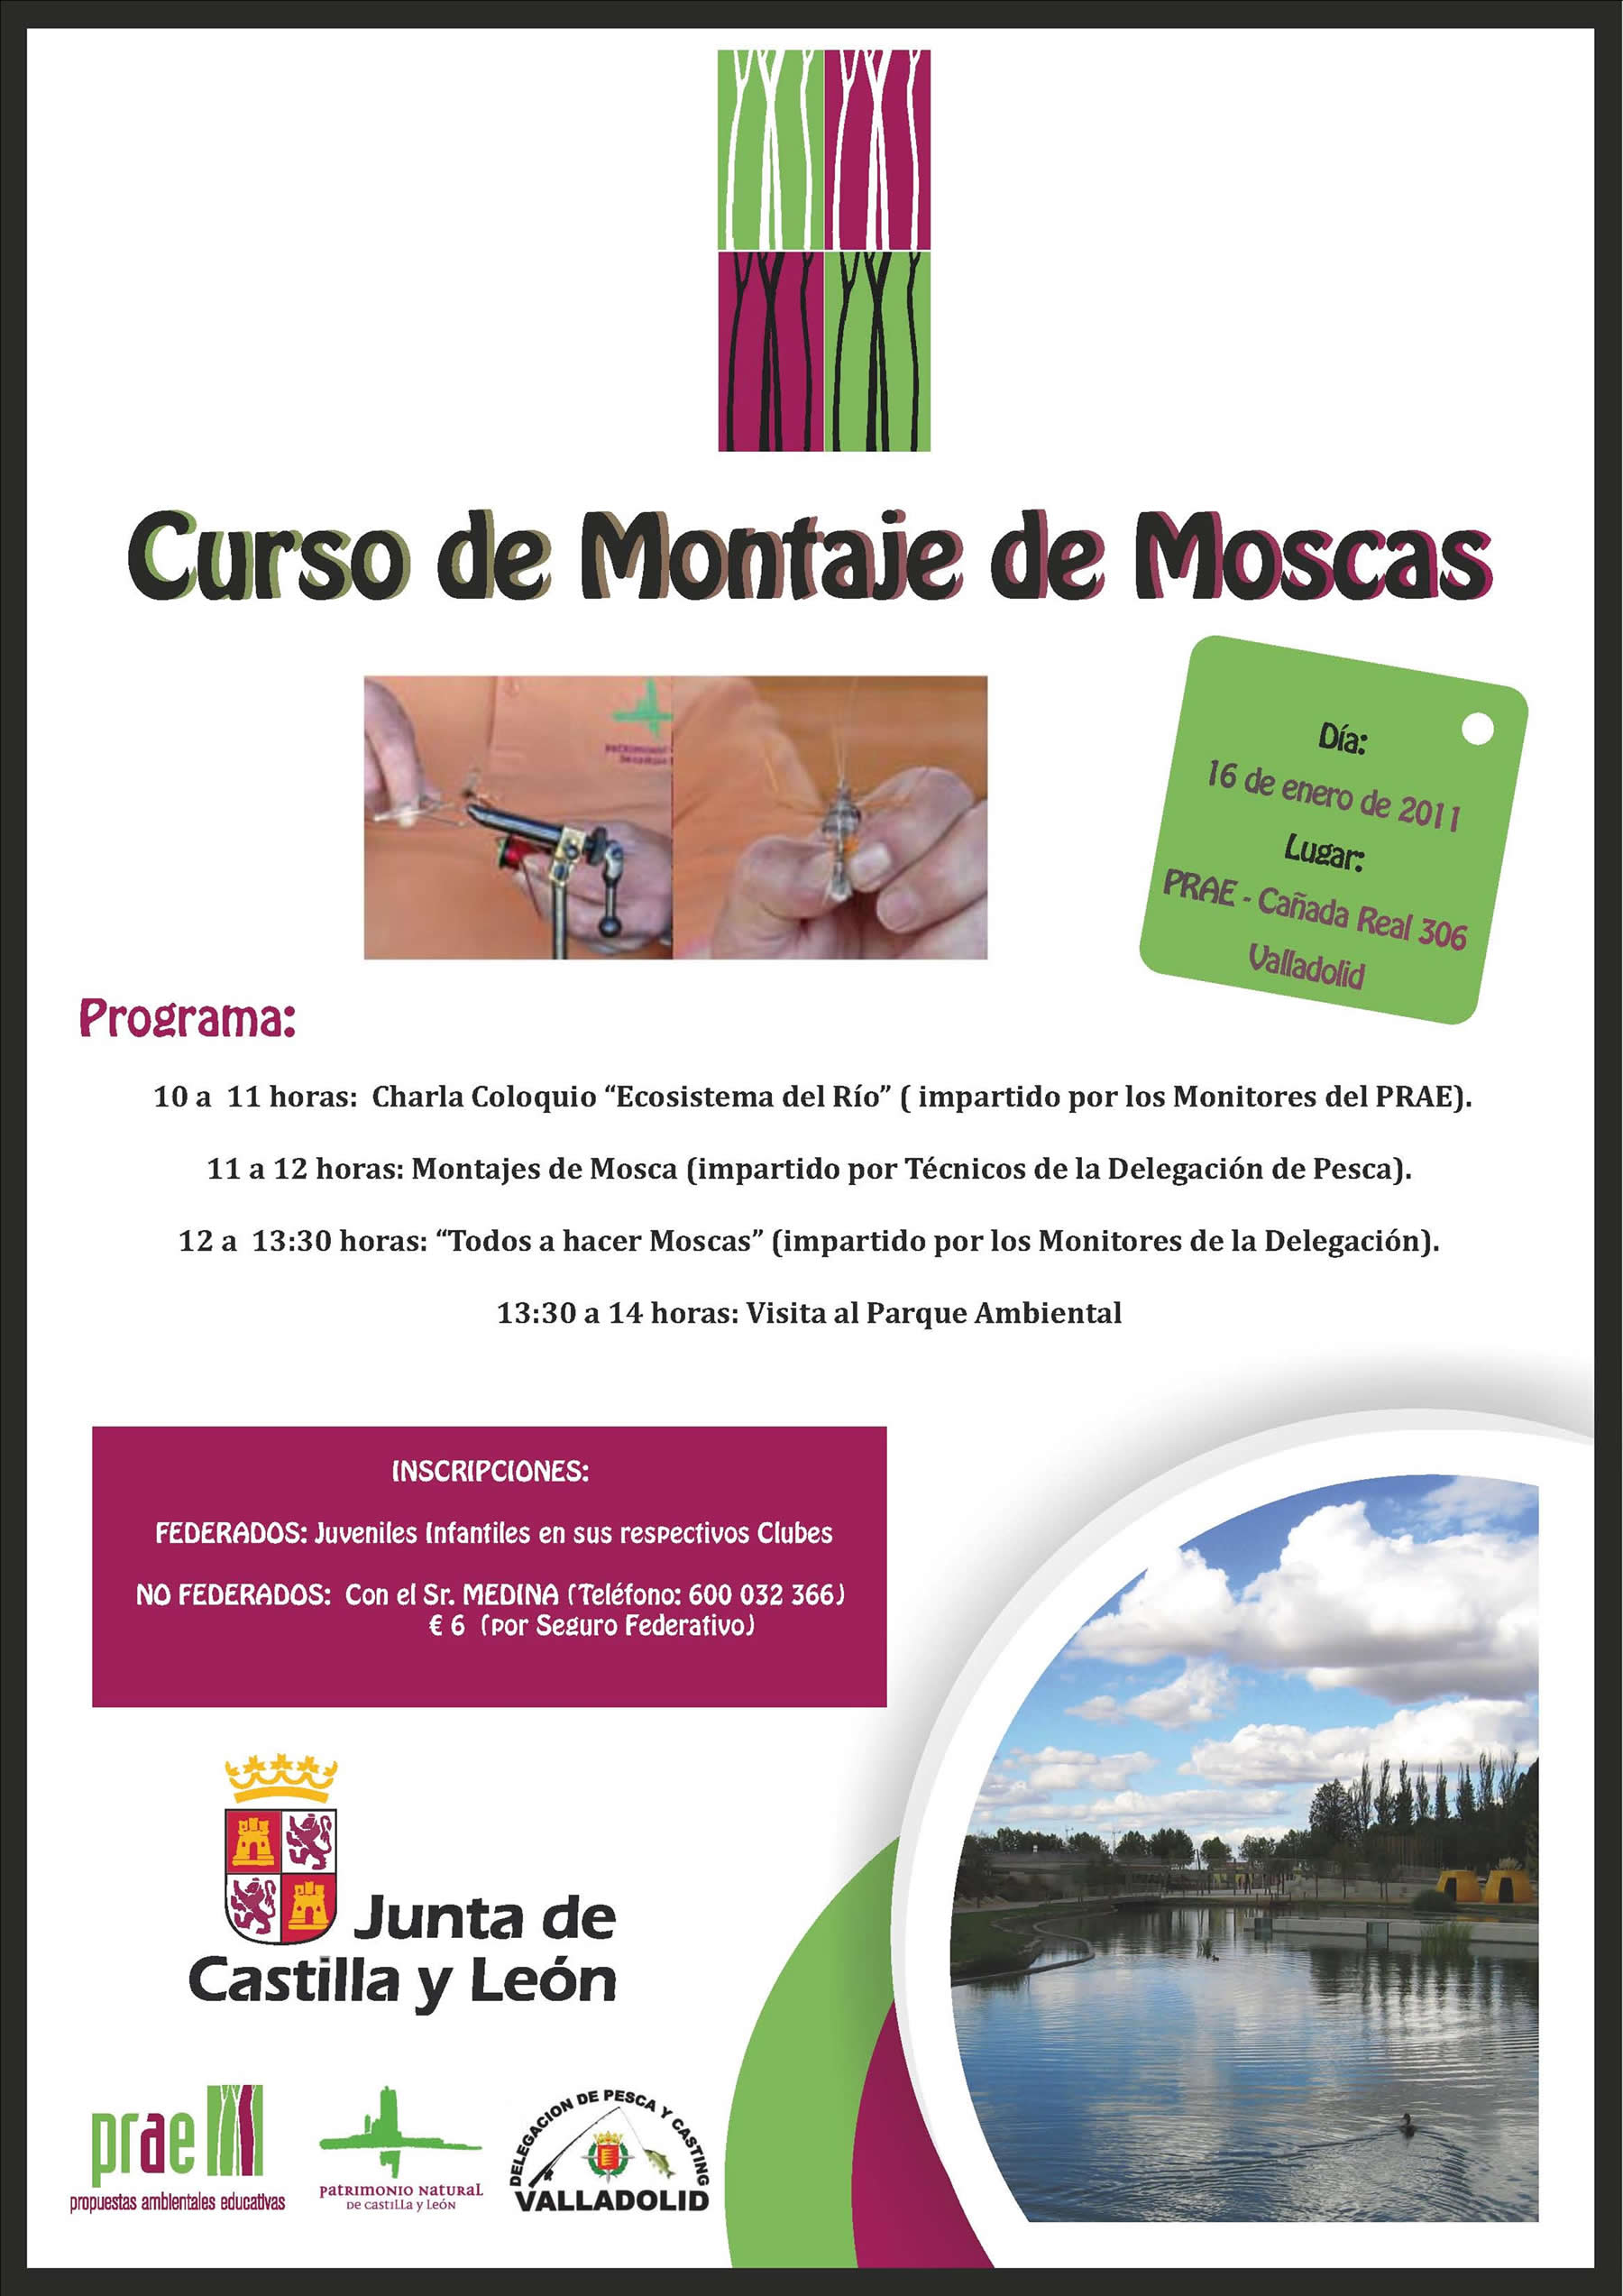 El PRAE organiza, en colaboración con la Delegación de Pesca y Casting de Valladolid, un curso de montaje de mosca